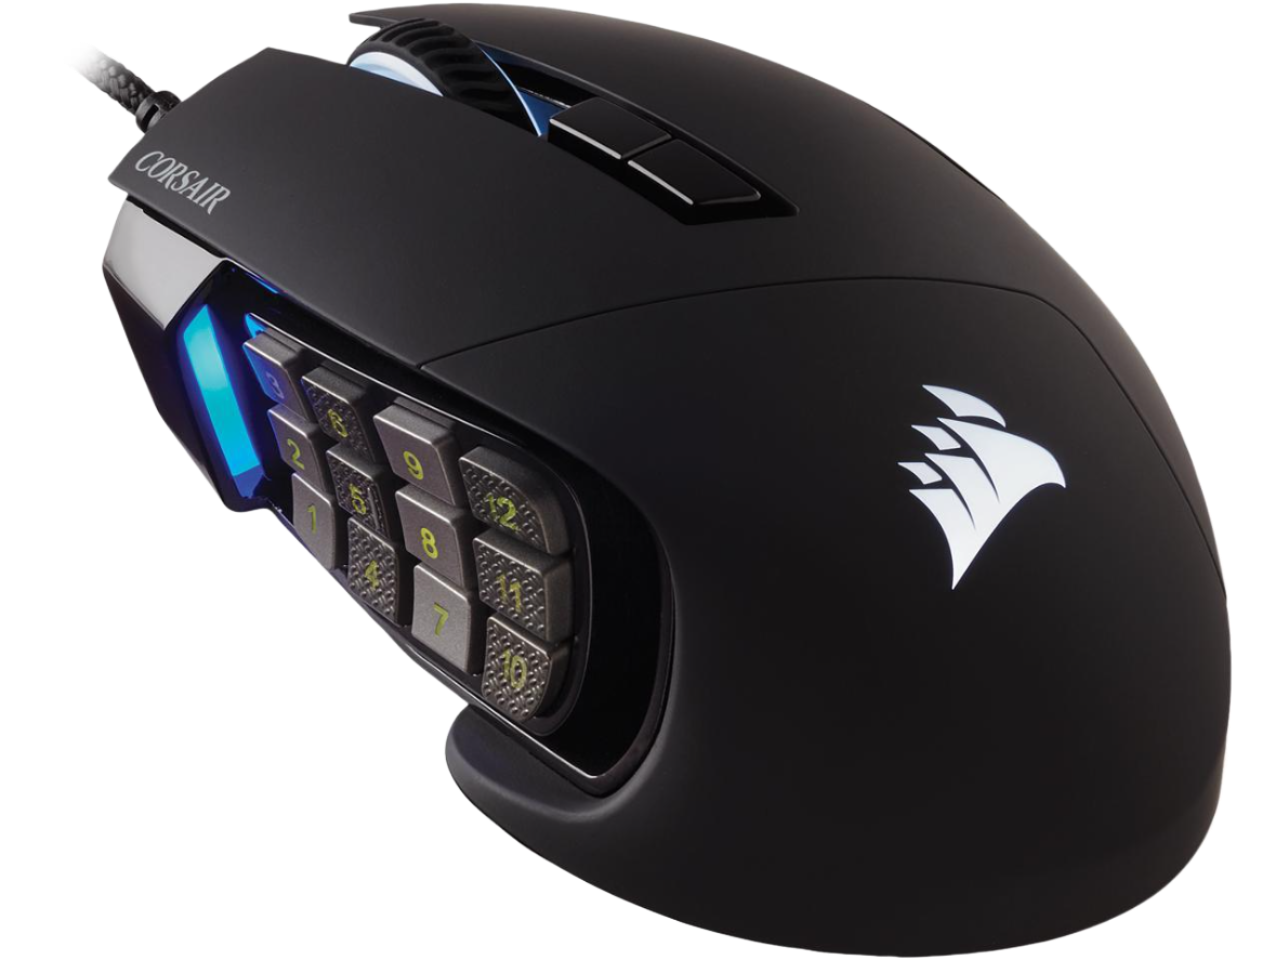 Corsair Scimitar RGB Elite Moba/MMO Mouse